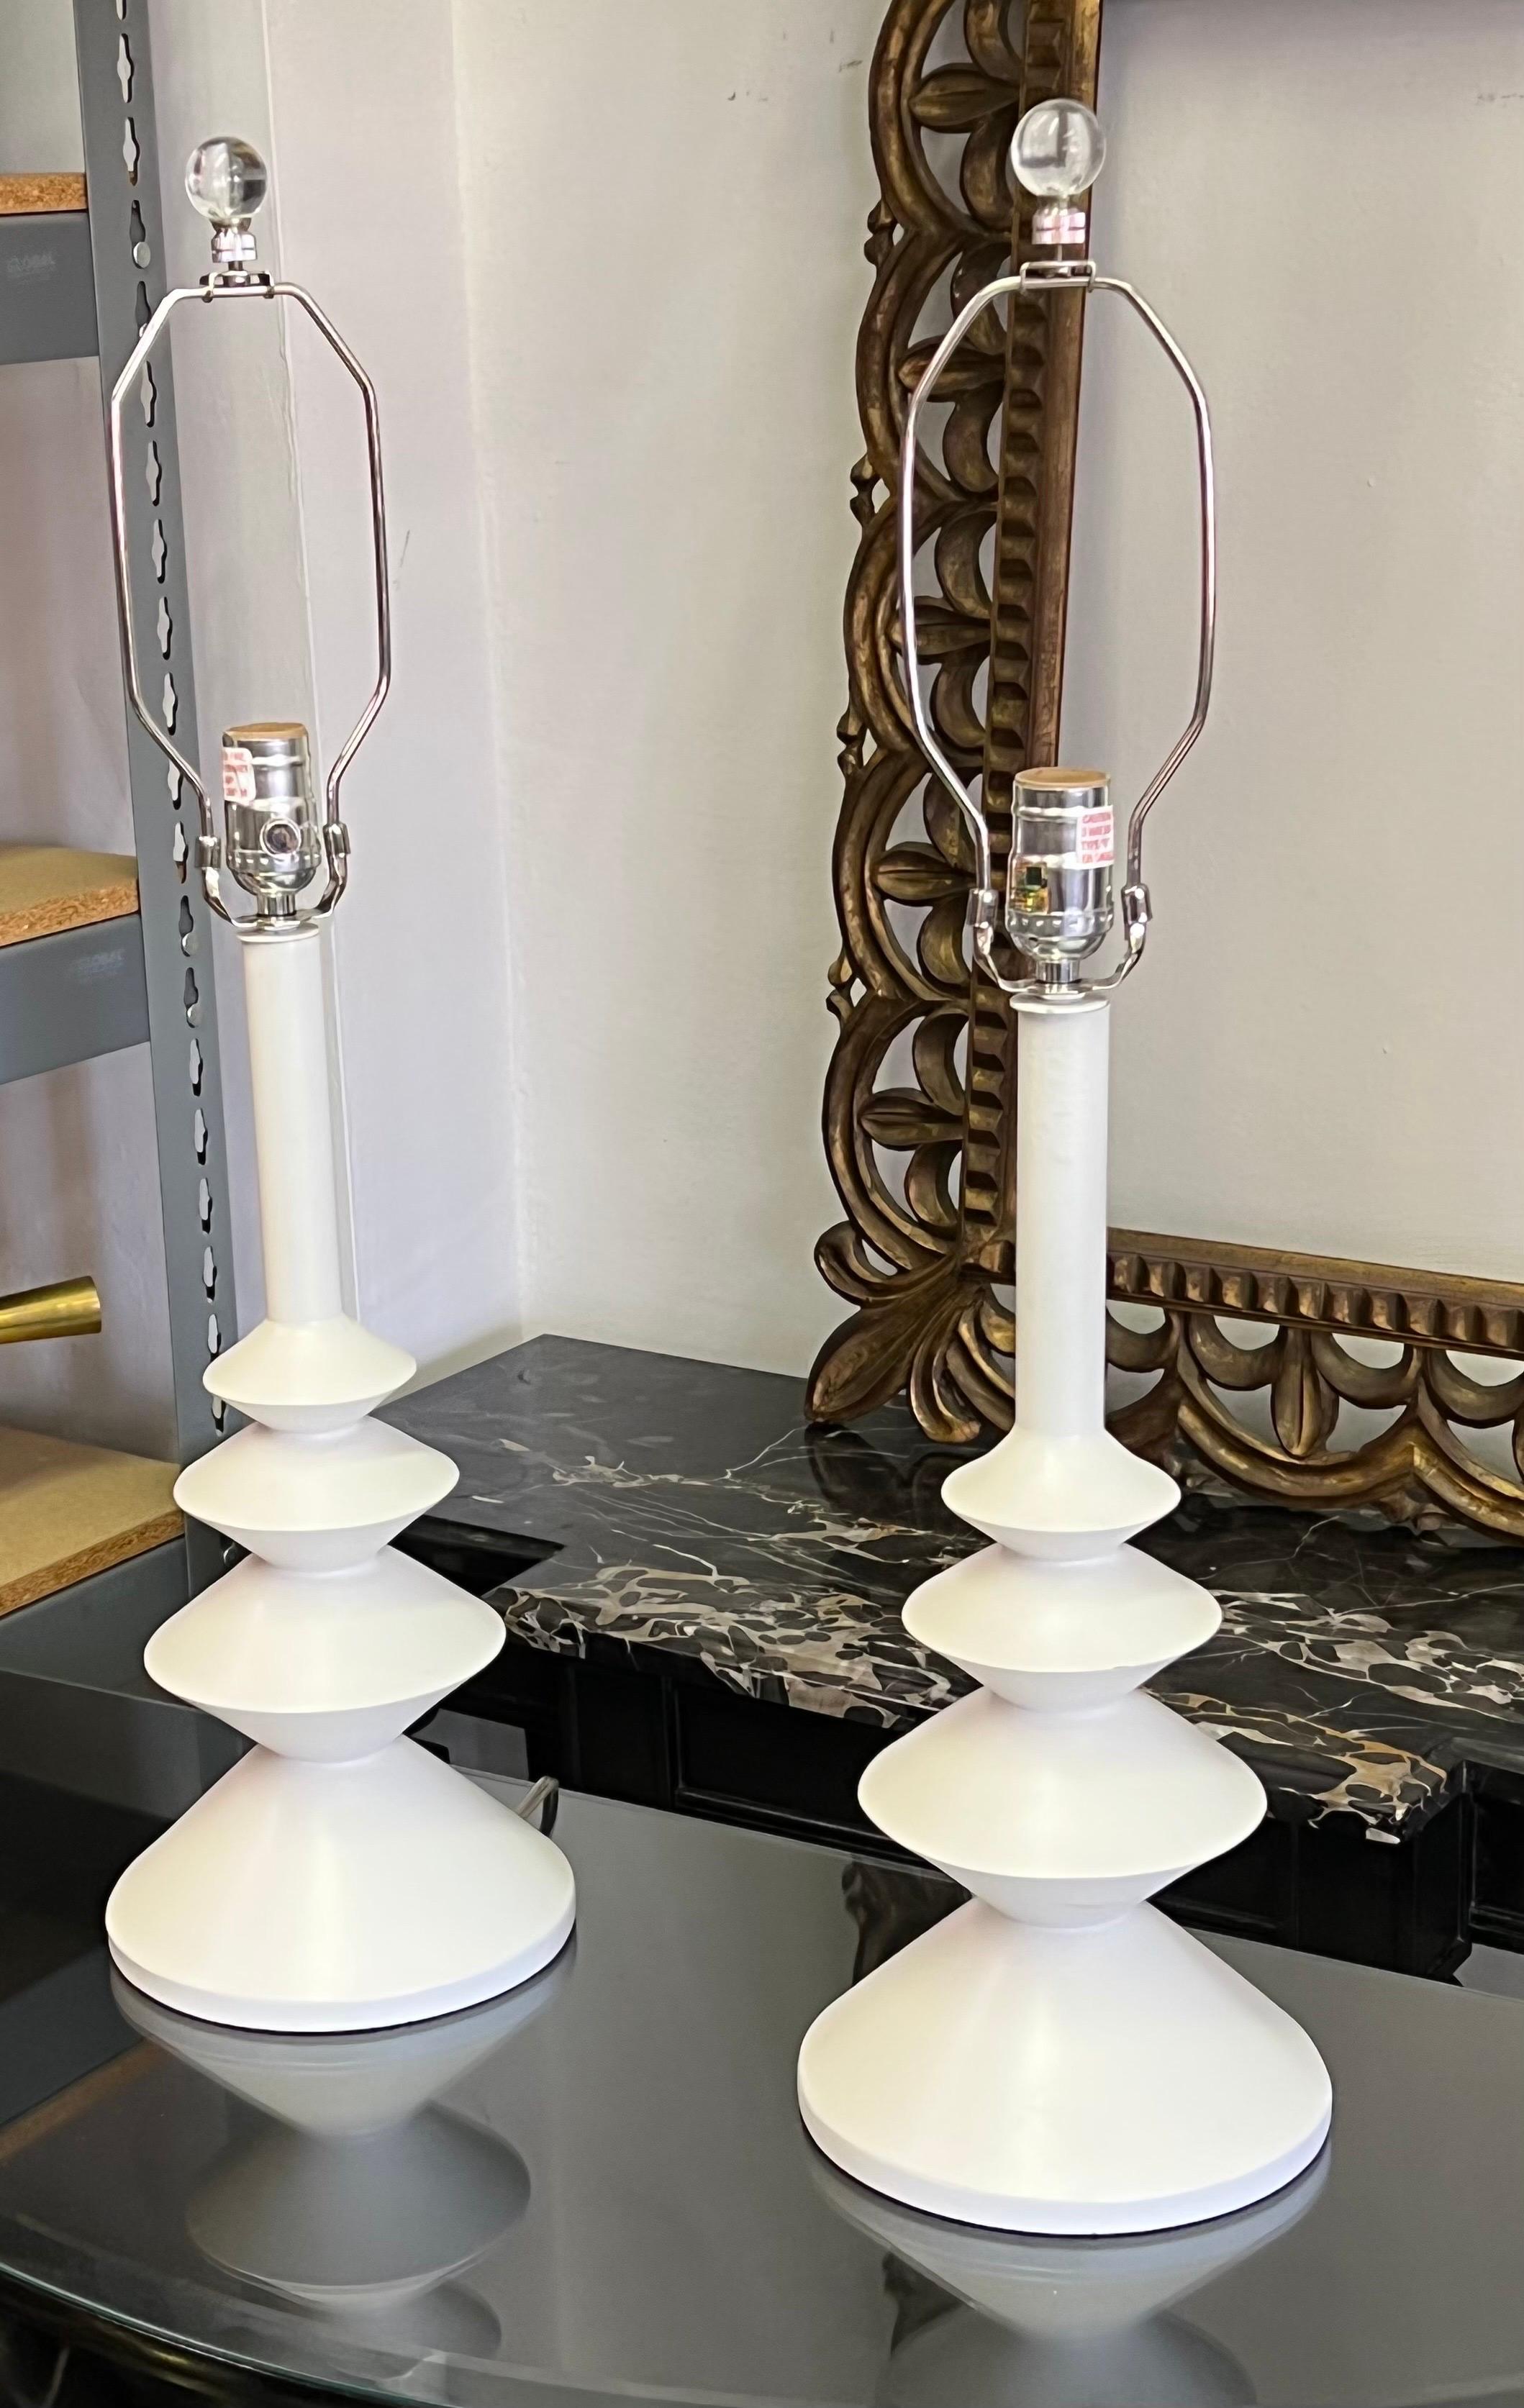 Elegante paire de lampes de table de style français dans le style d'Alberto et Diego Giacometti, et attribuée à Sirmos. Les pièces ont une forme organique colonnaire et cylindrique intemporelle qui possède une sensibilité enchanteresse. 

Prix et